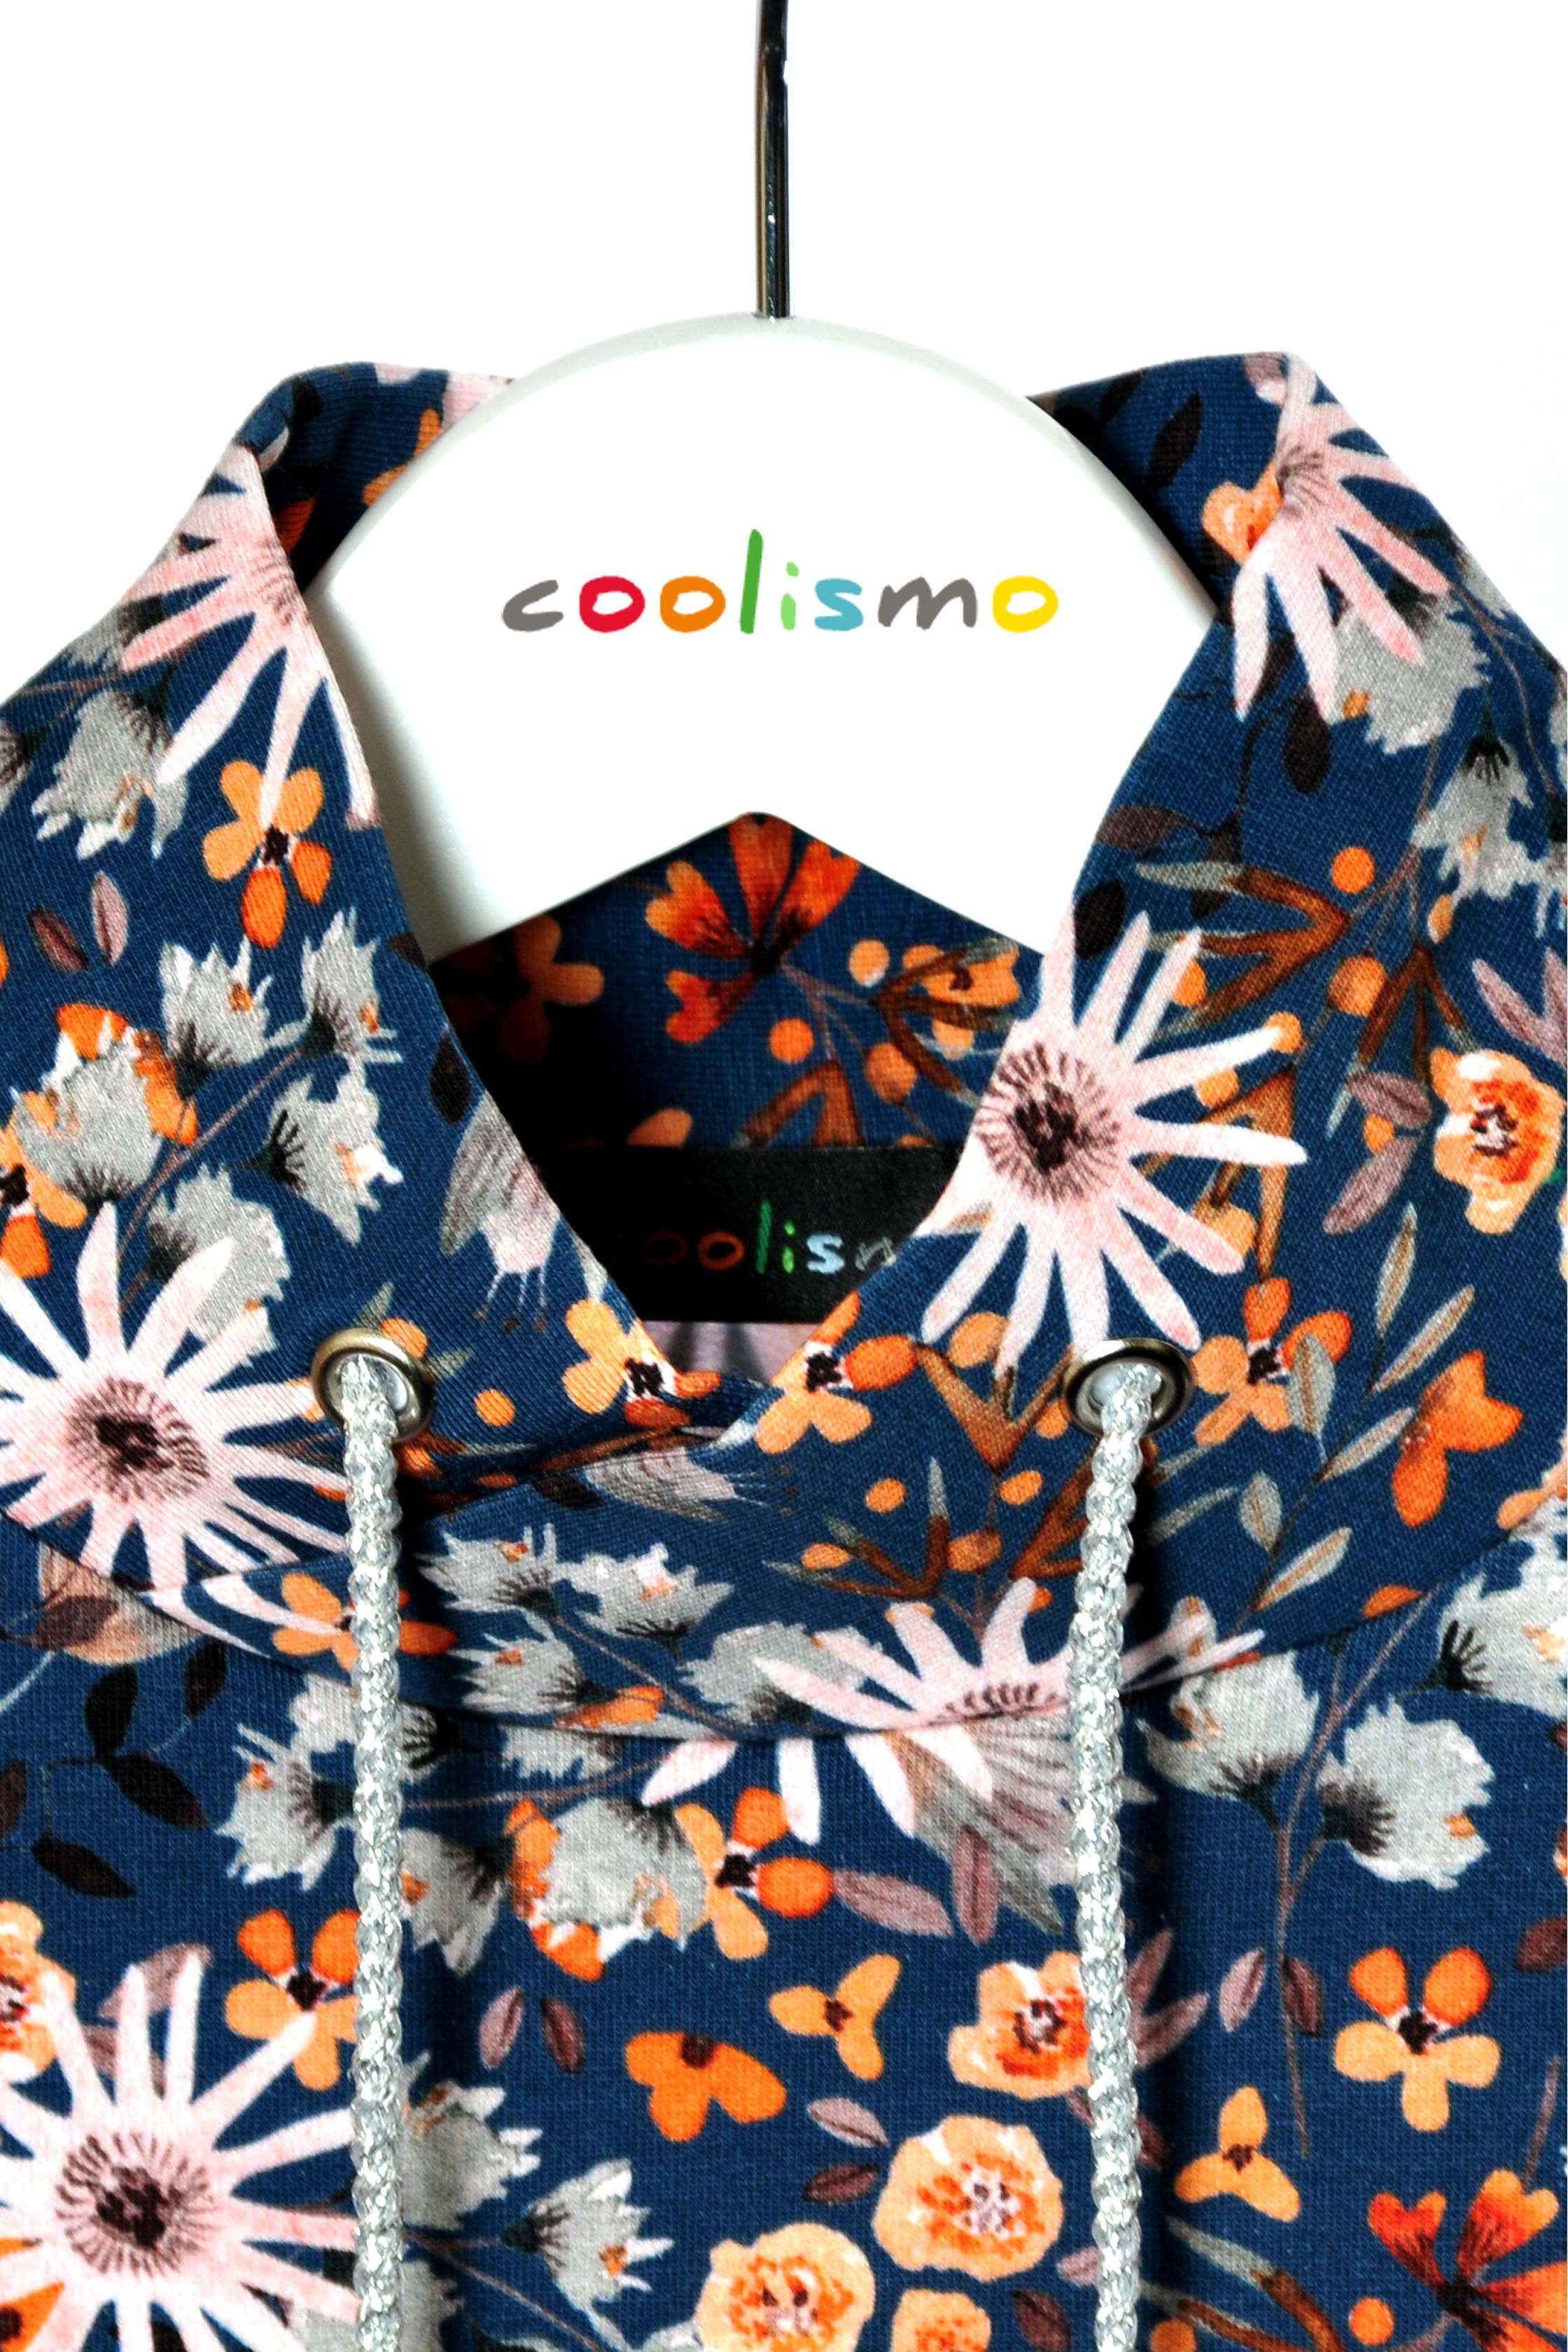 mit Baumwolle, für Mädchen Sweater Produktion blau coolismo Blumen Sweatshirt europäische Motivdruck